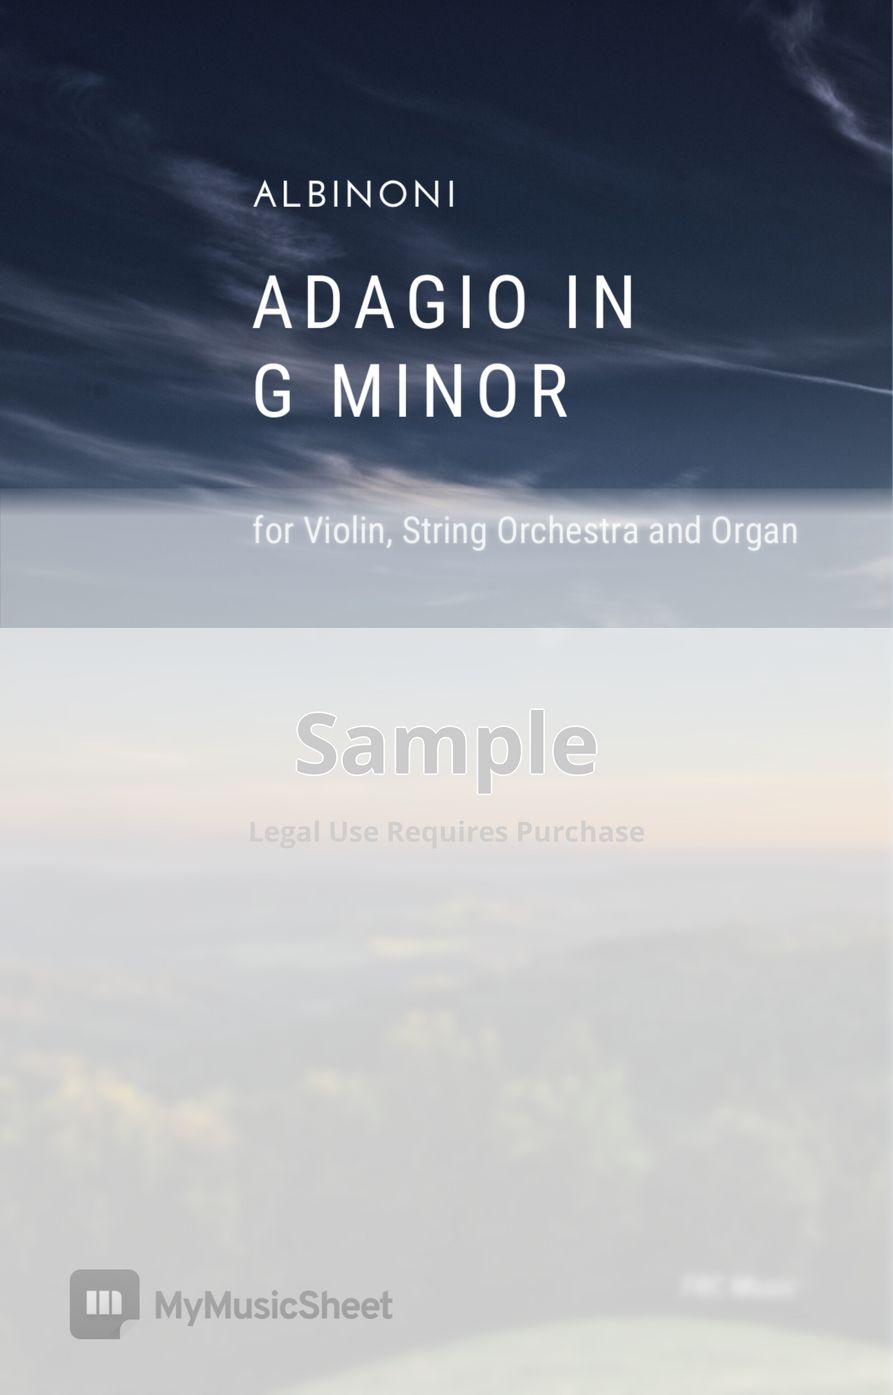 Albinoni | Giazotto - Adagio in G minor (Score and Parts) by Flavio Regis Cunha